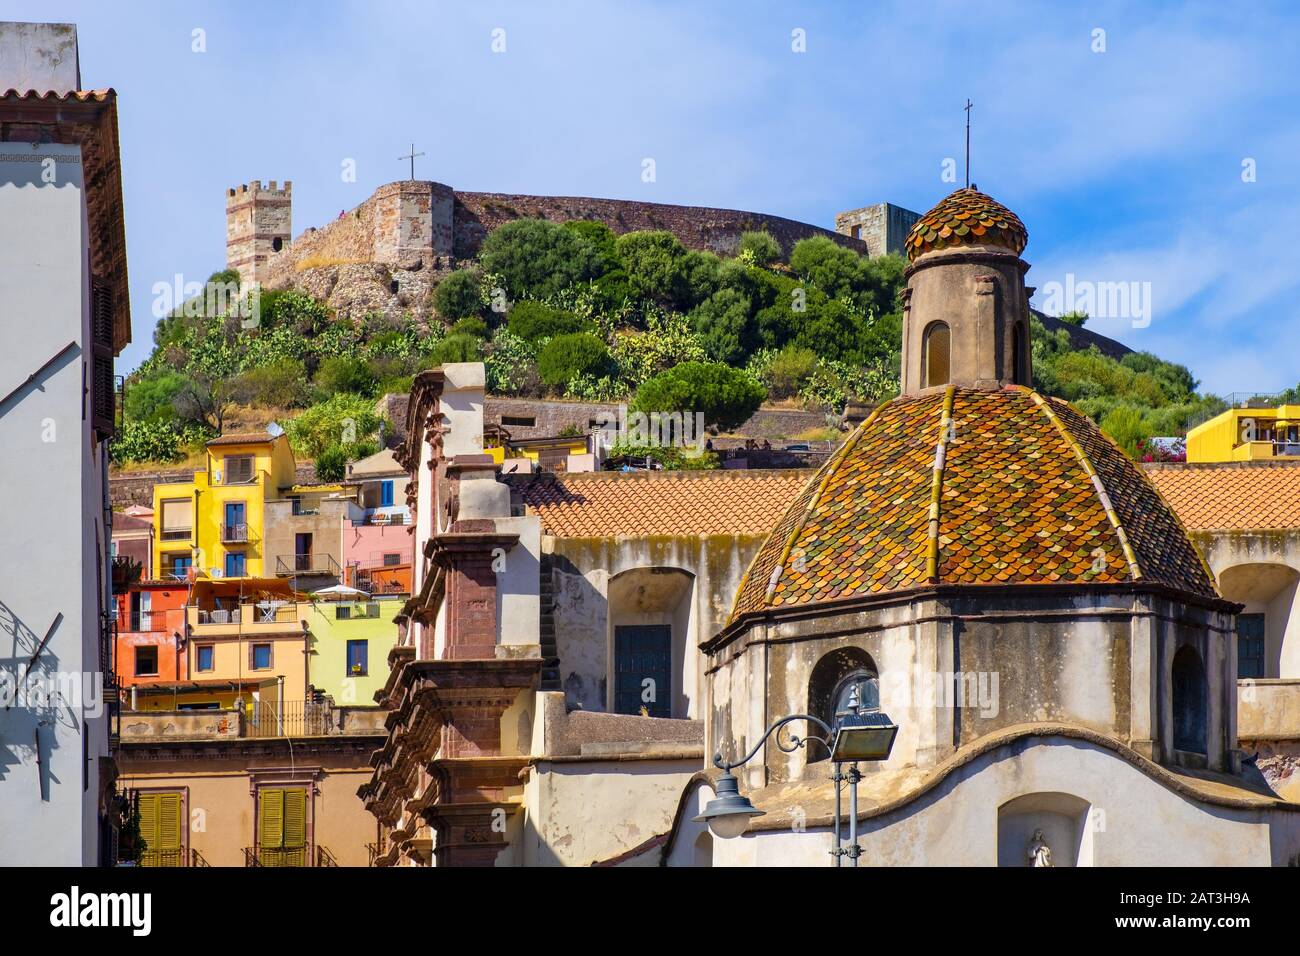 Bosa, Sardinien/Italien - 2018/08/13: Bosa-Kathedrale - Dom di Bosa - am Piazza Duomo am Temo-Flussdamm mit dem Schloss Malaspina - Schloss Serravalle - im Hintergrund Stockfoto